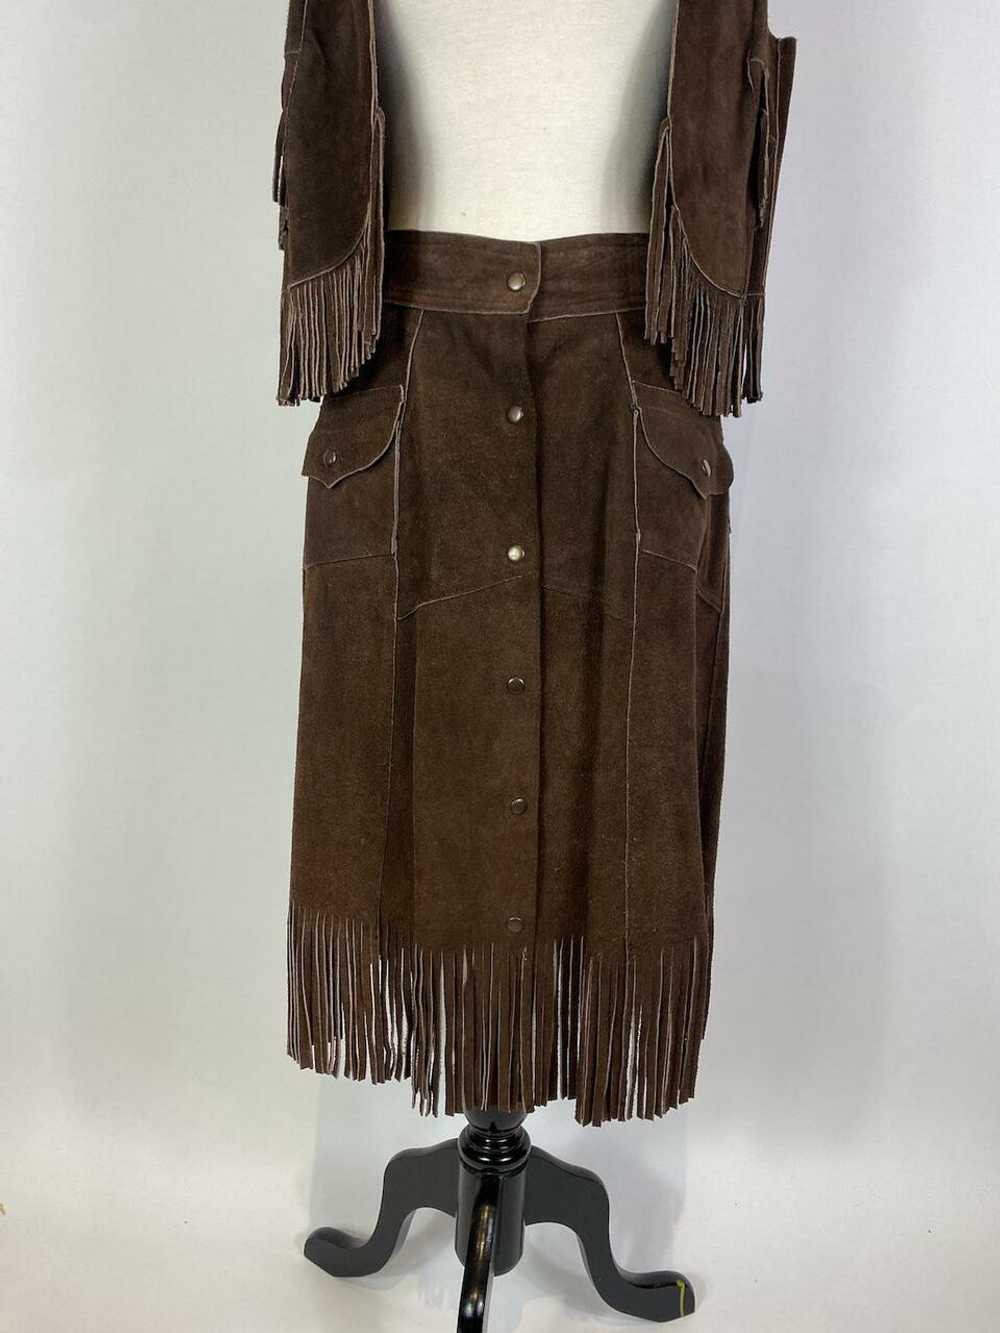 1970s Suede Leather Fringe Vest and Skirt Set - image 3